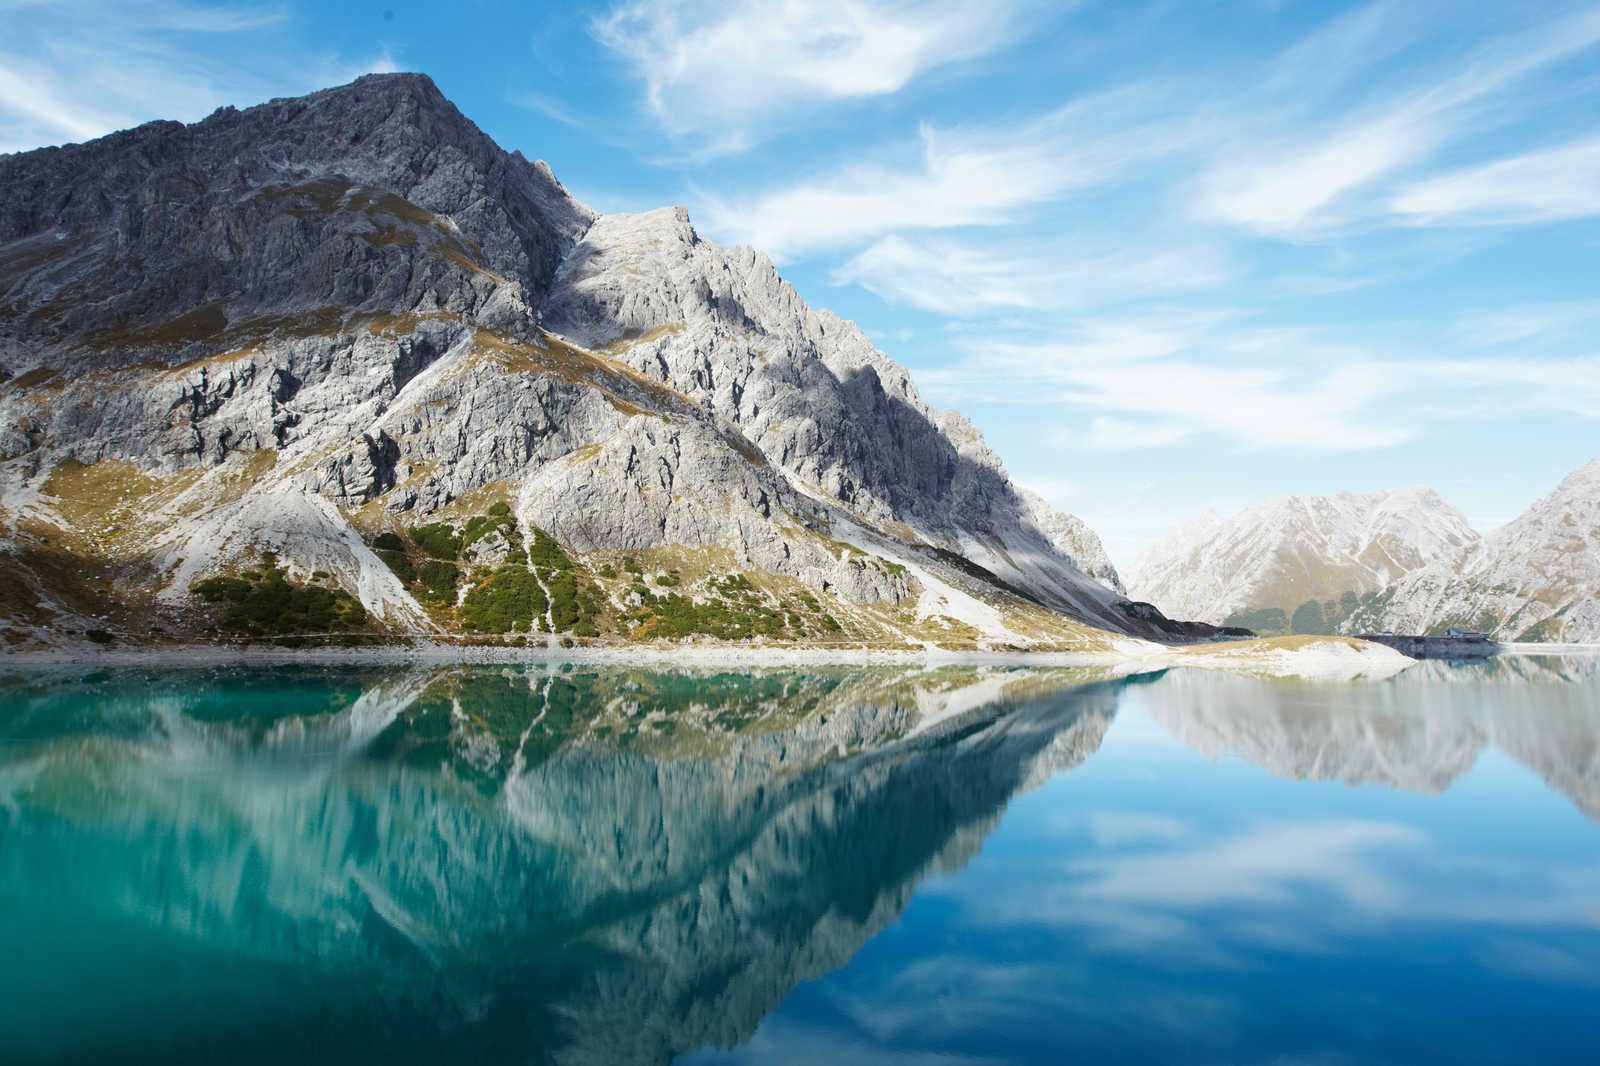             Lago di montagna trasparente - Quadro su tela con panorama naturale di montagna - 0,90 m x 0,60 m
        